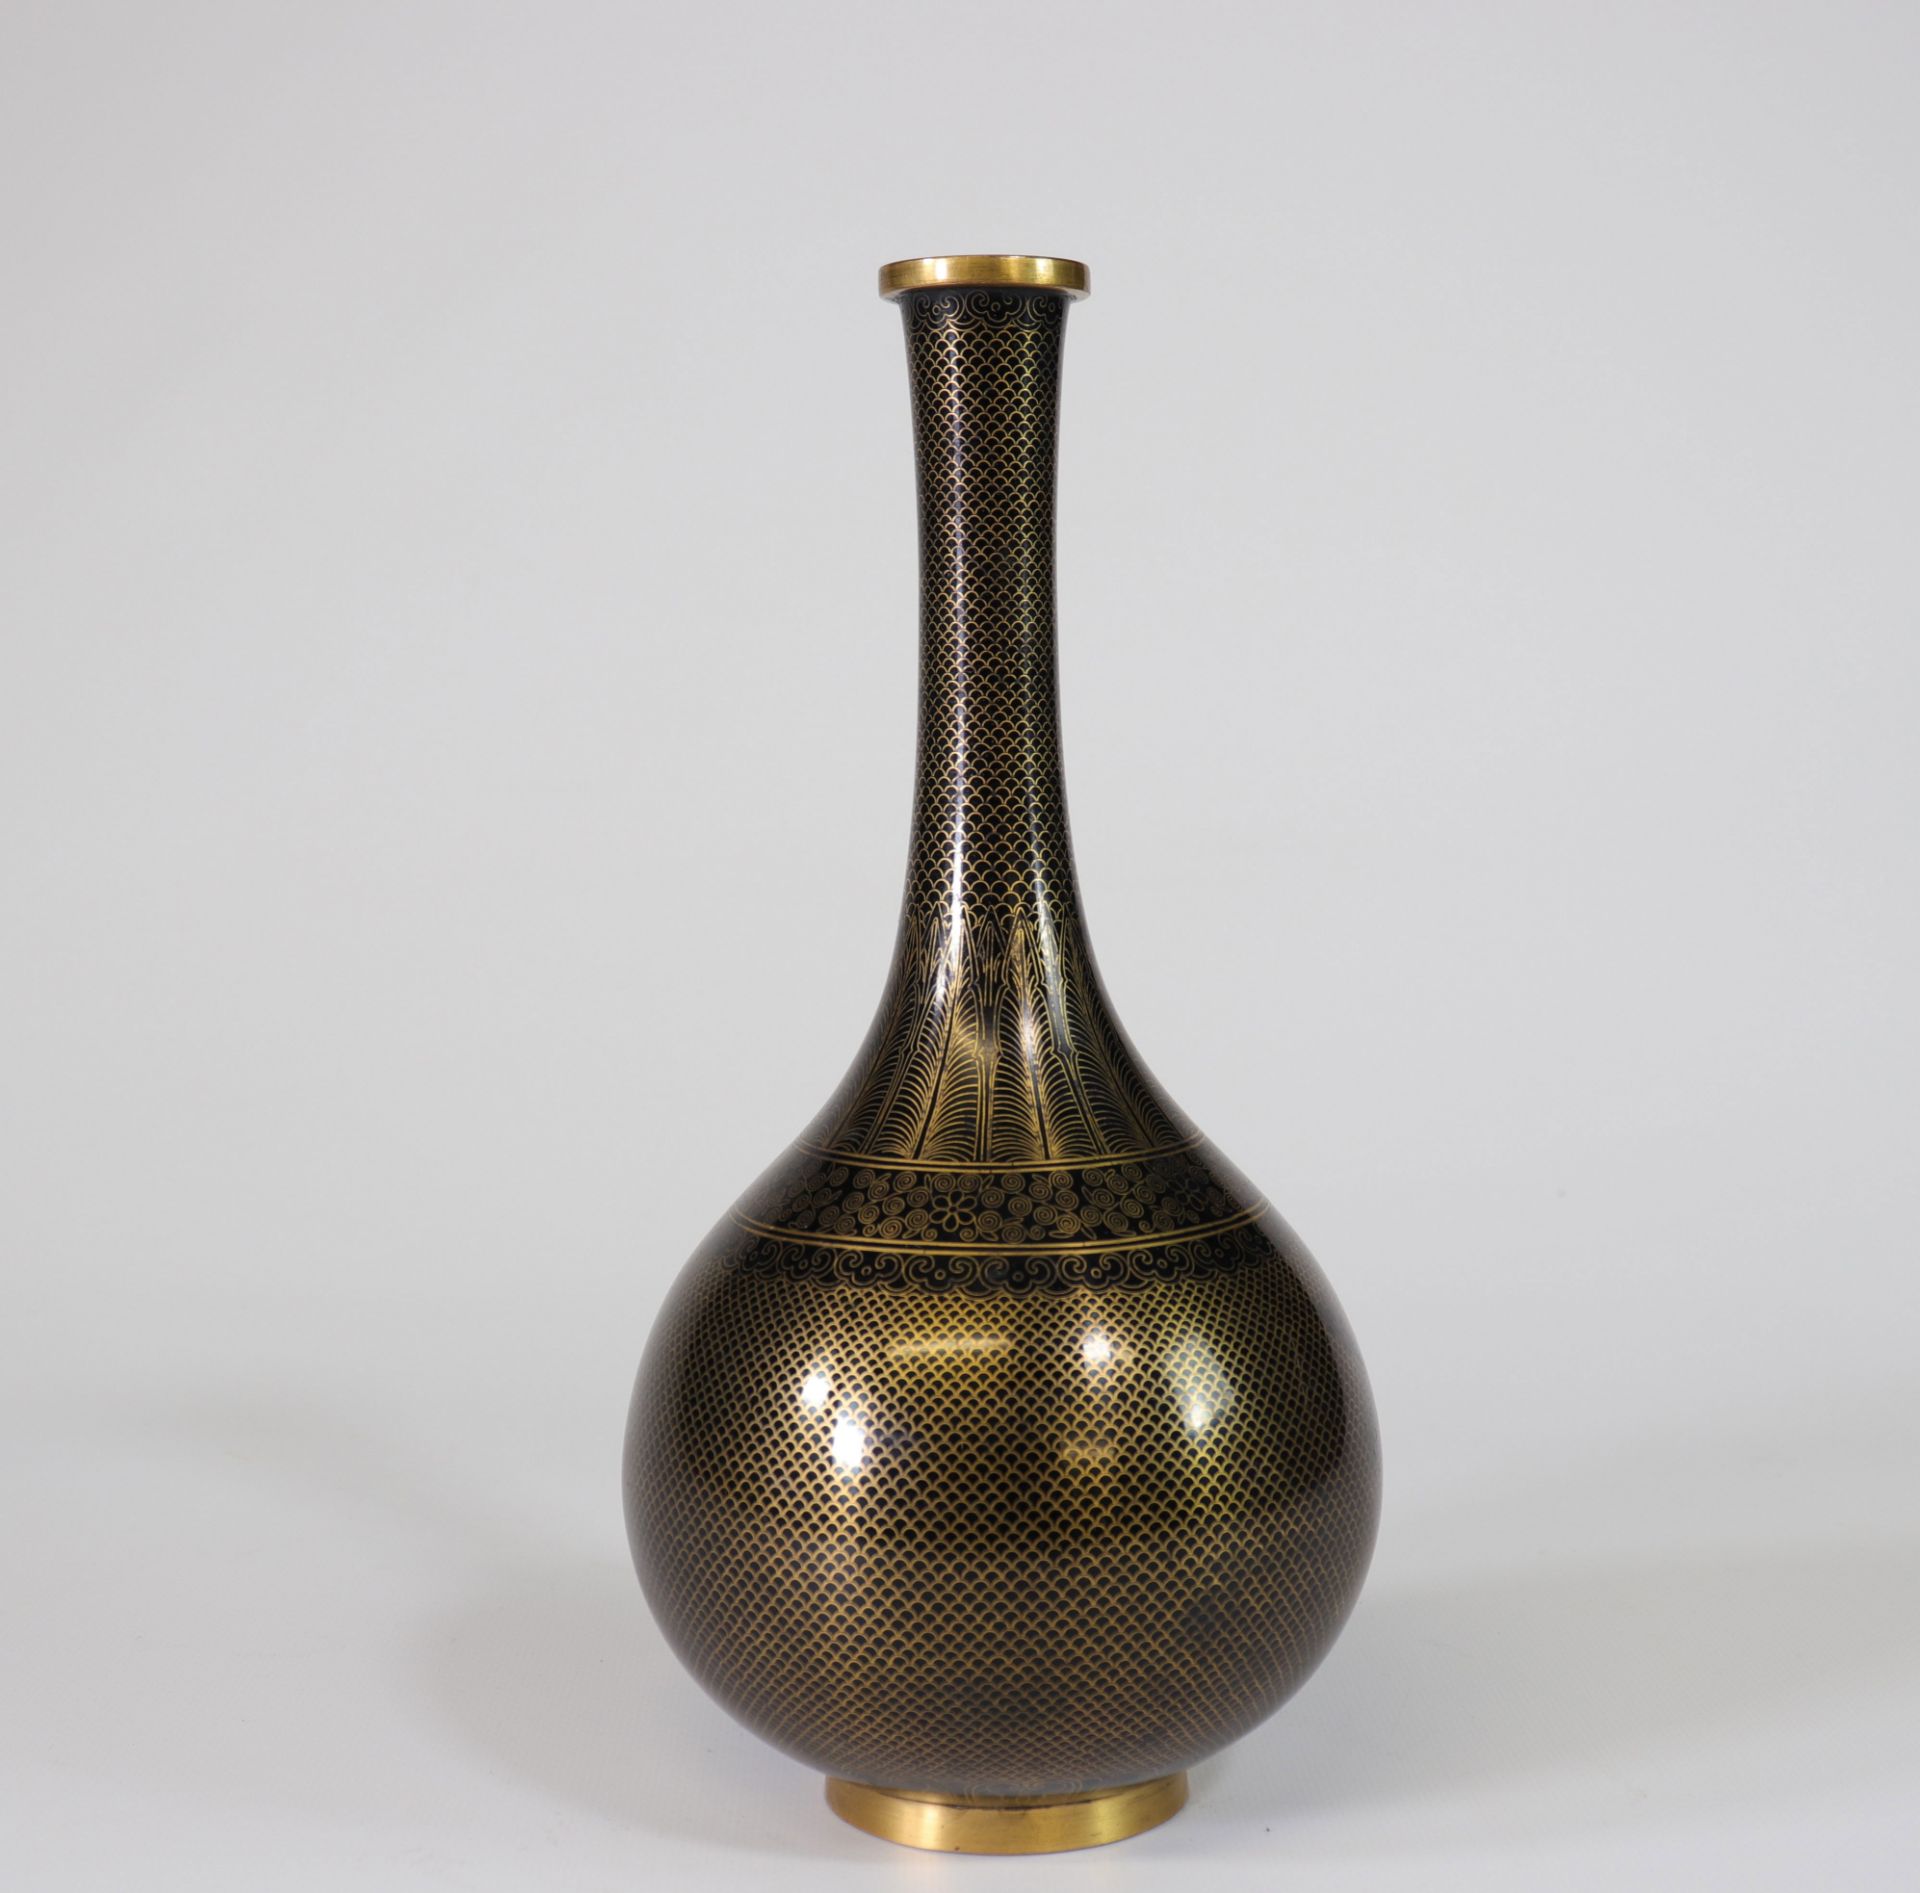 Japan cloisonne vase imitating lacquer 19th